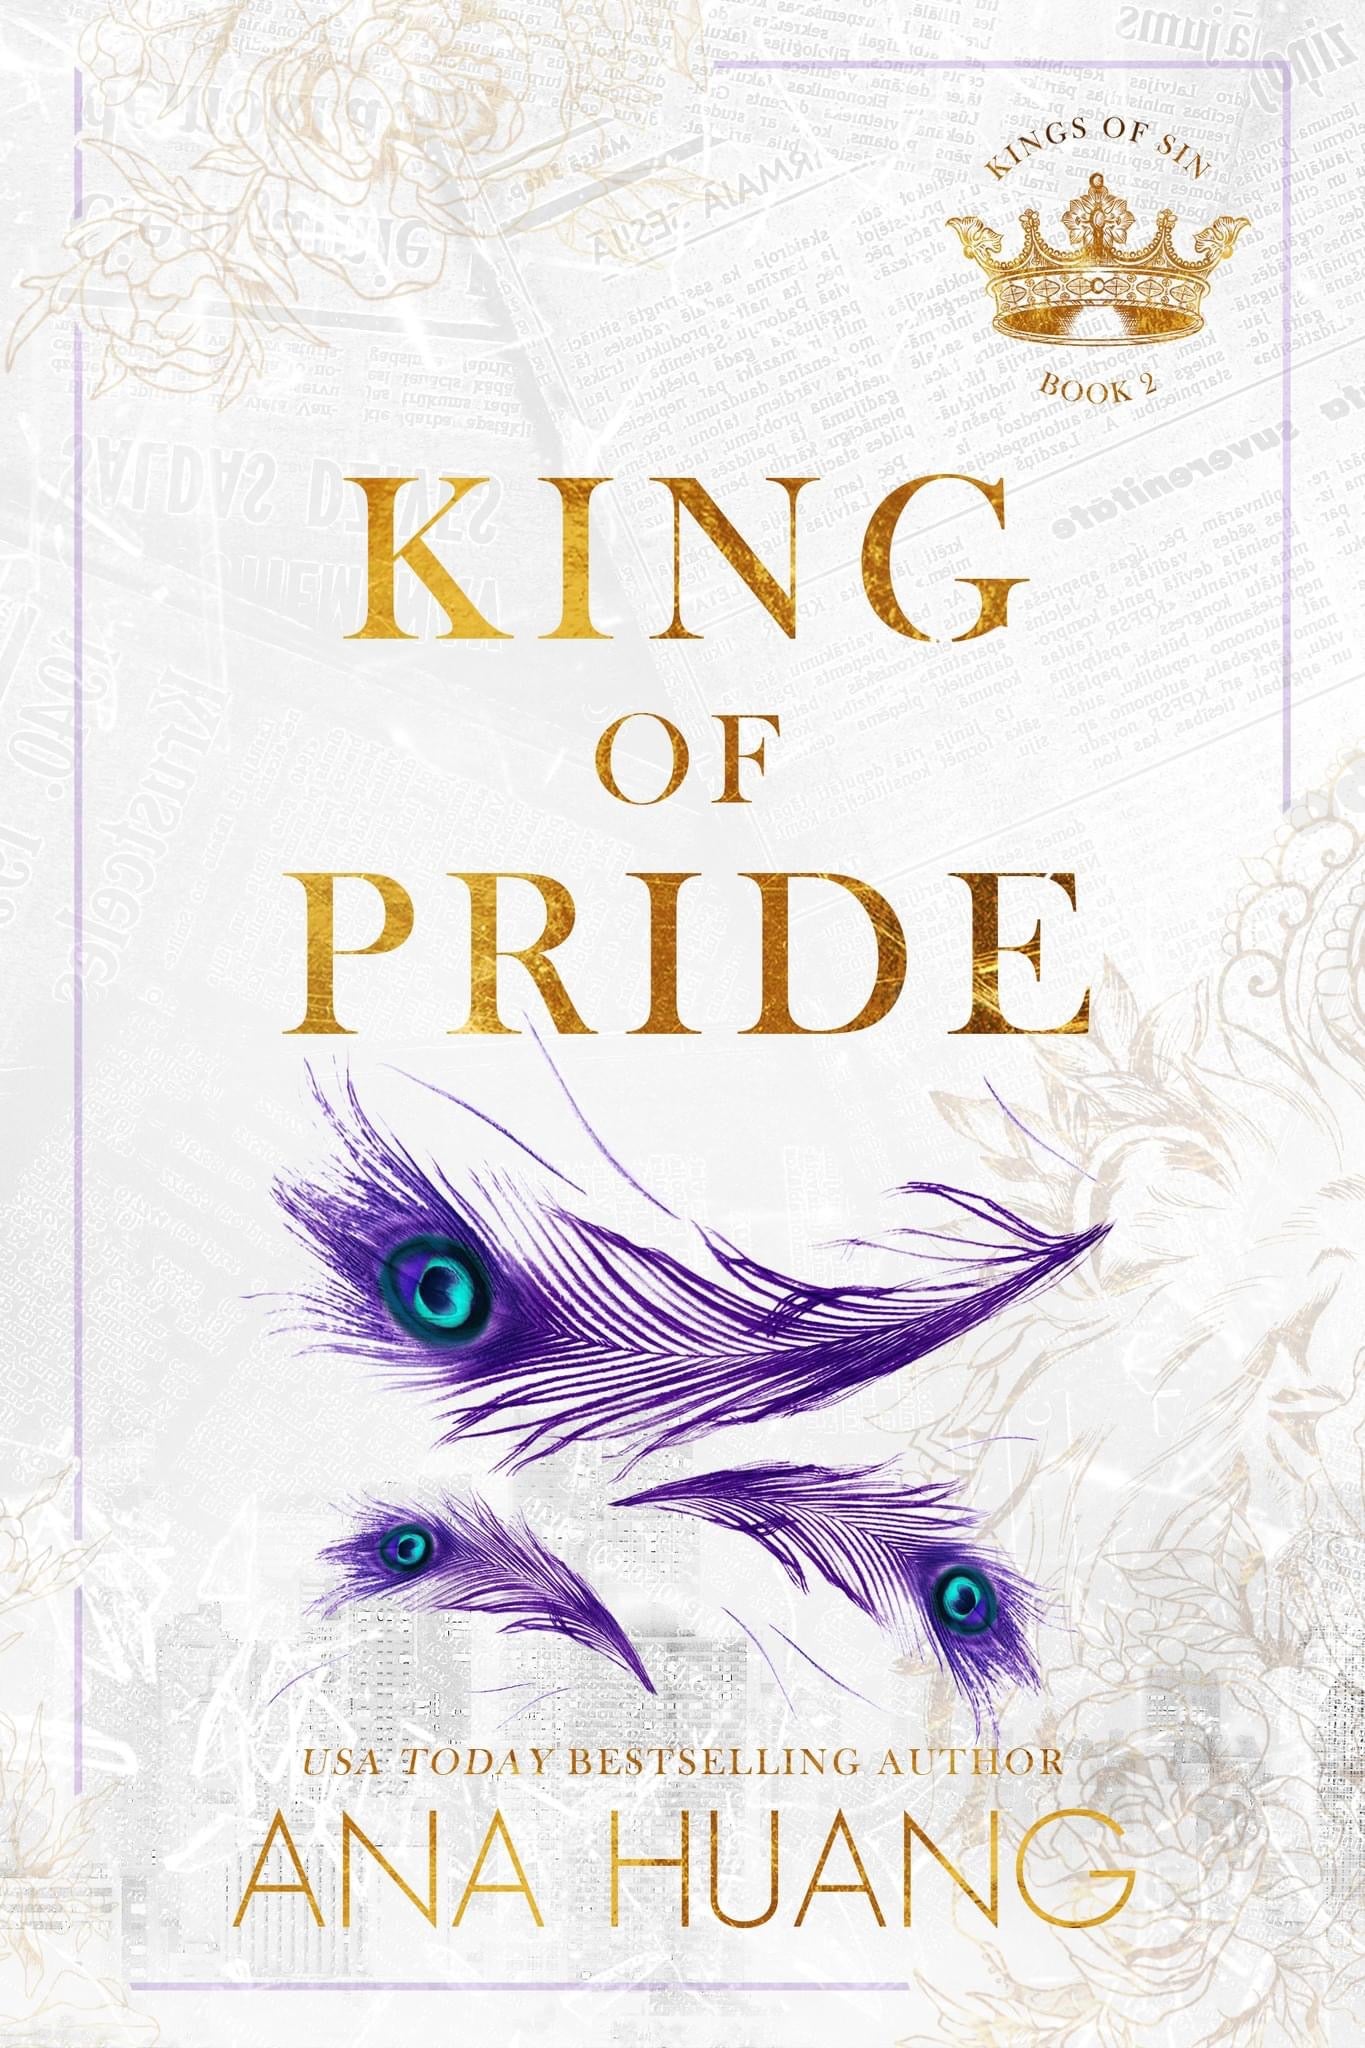 King of Pride by Ana Huang (Kings of Sin #2)